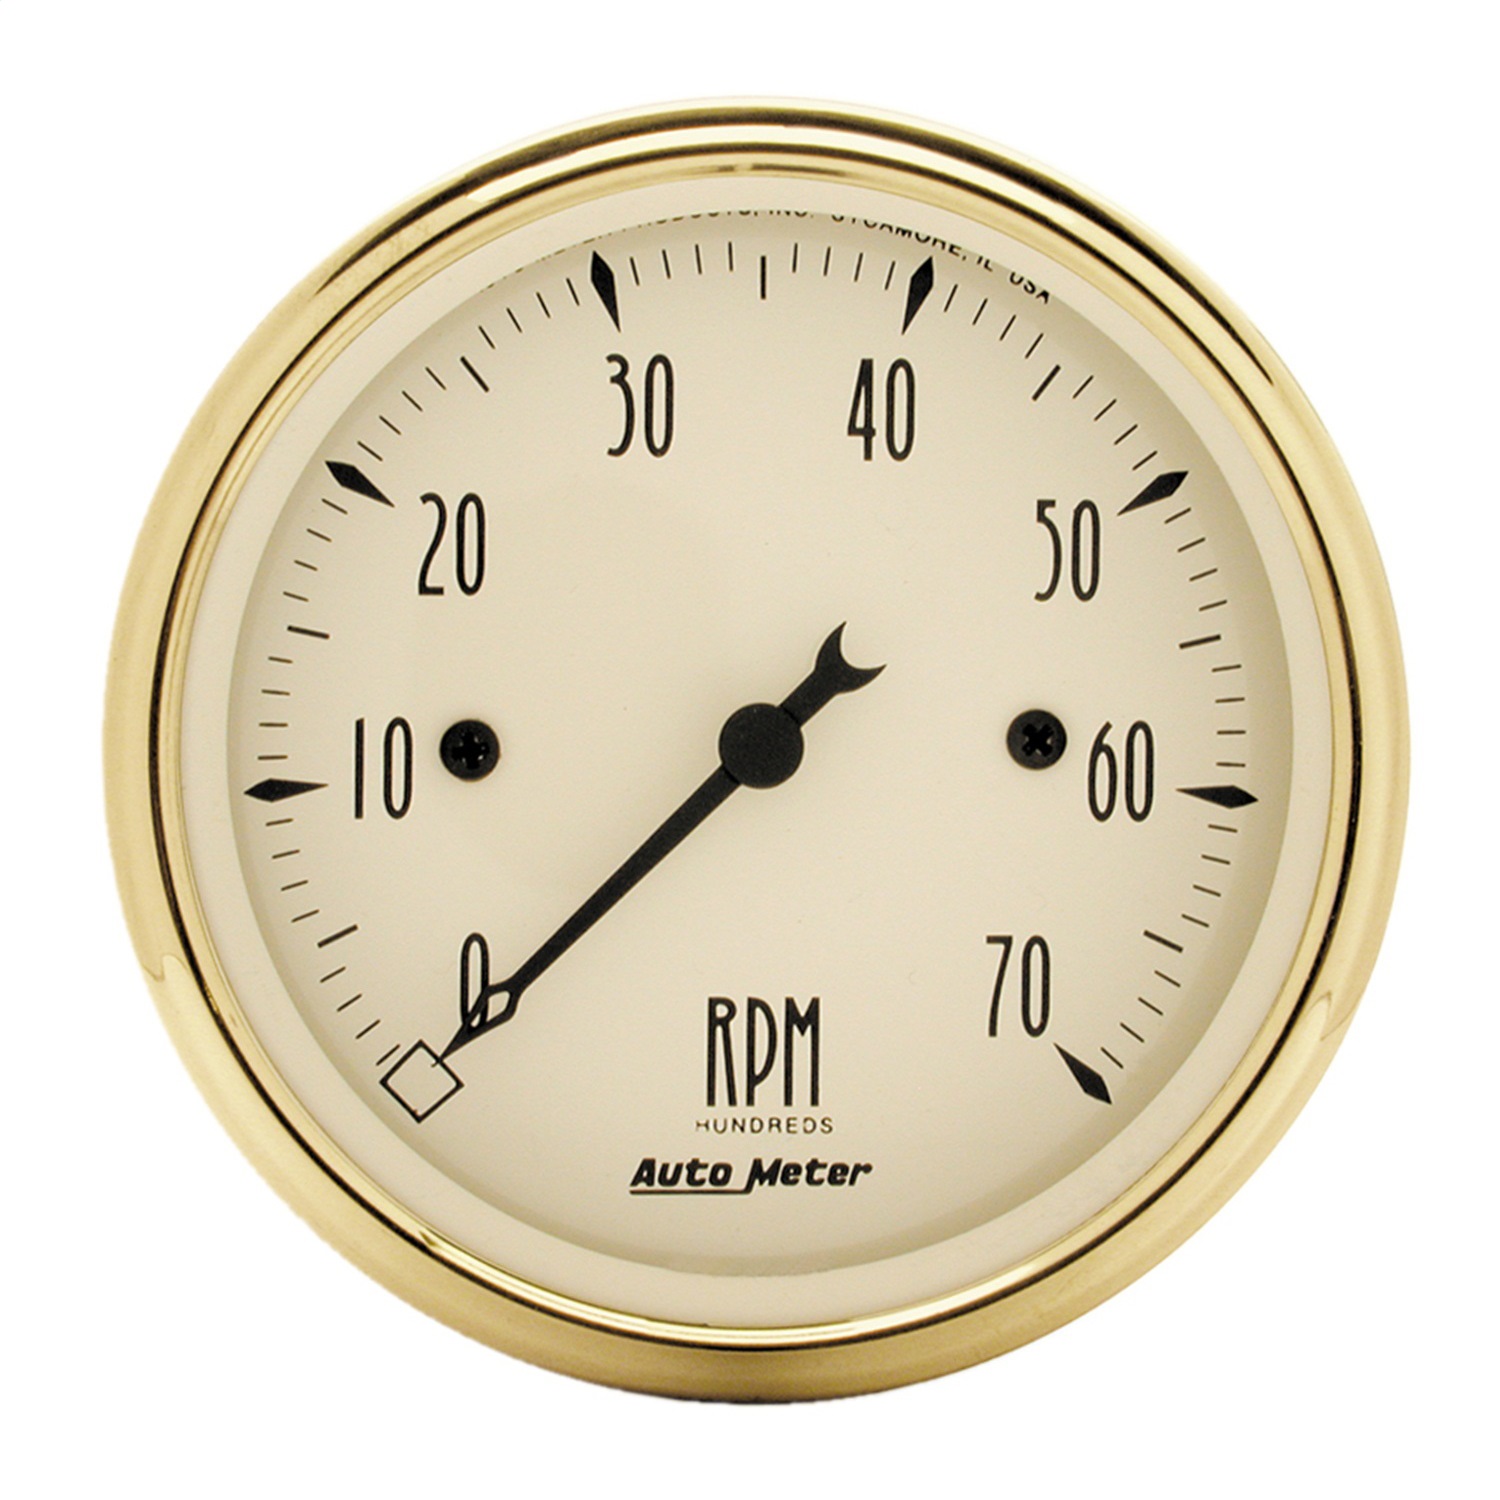 Auto Meter Auto Meter 1595 Golden Oldies; Electric Tachometer